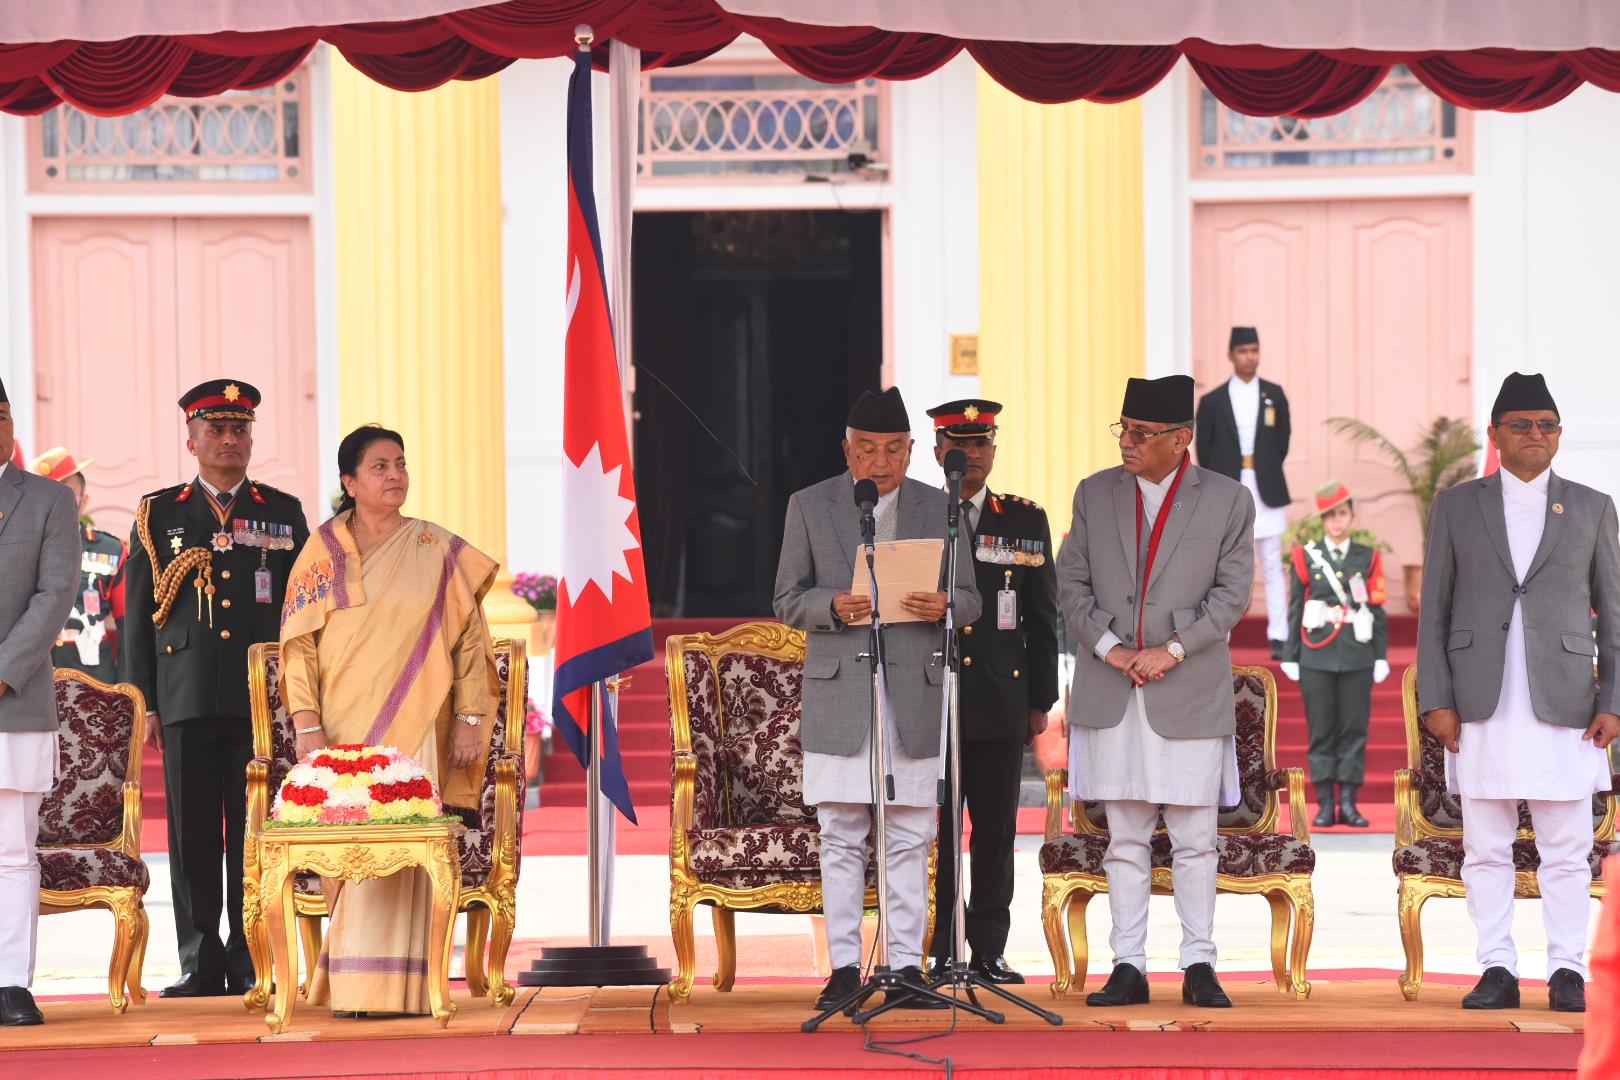 राष्ट्रपति रामचन्द्र पौडेलको शपथ समारोह